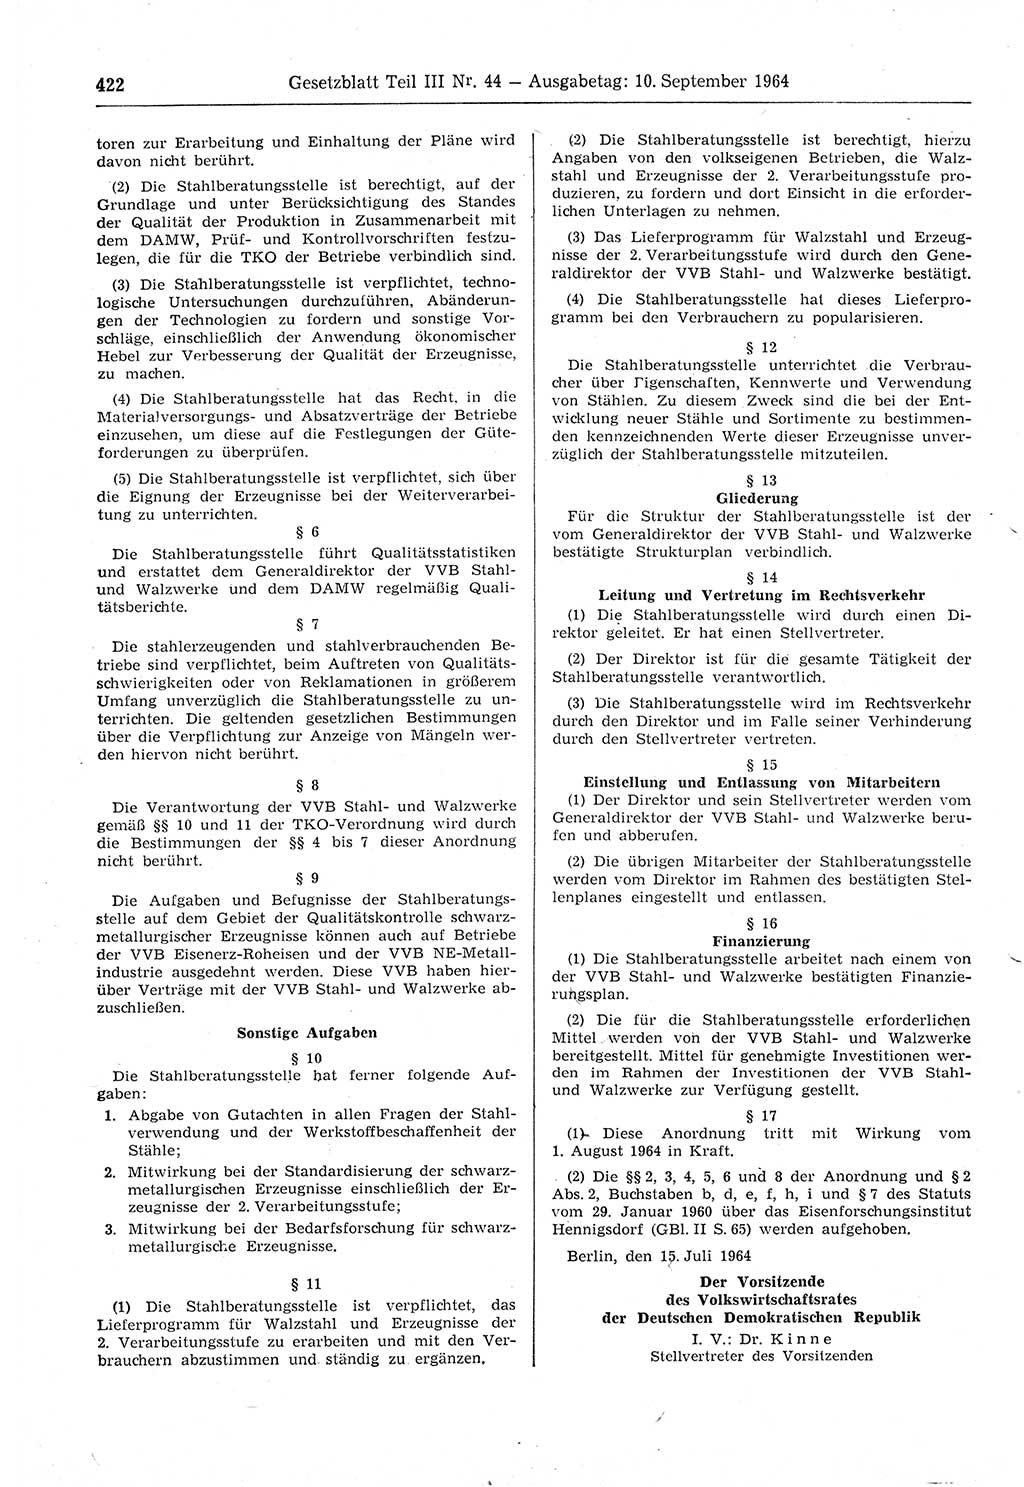 Gesetzblatt (GBl.) der Deutschen Demokratischen Republik (DDR) Teil ⅠⅠⅠ 1964, Seite 422 (GBl. DDR ⅠⅠⅠ 1964, S. 422)